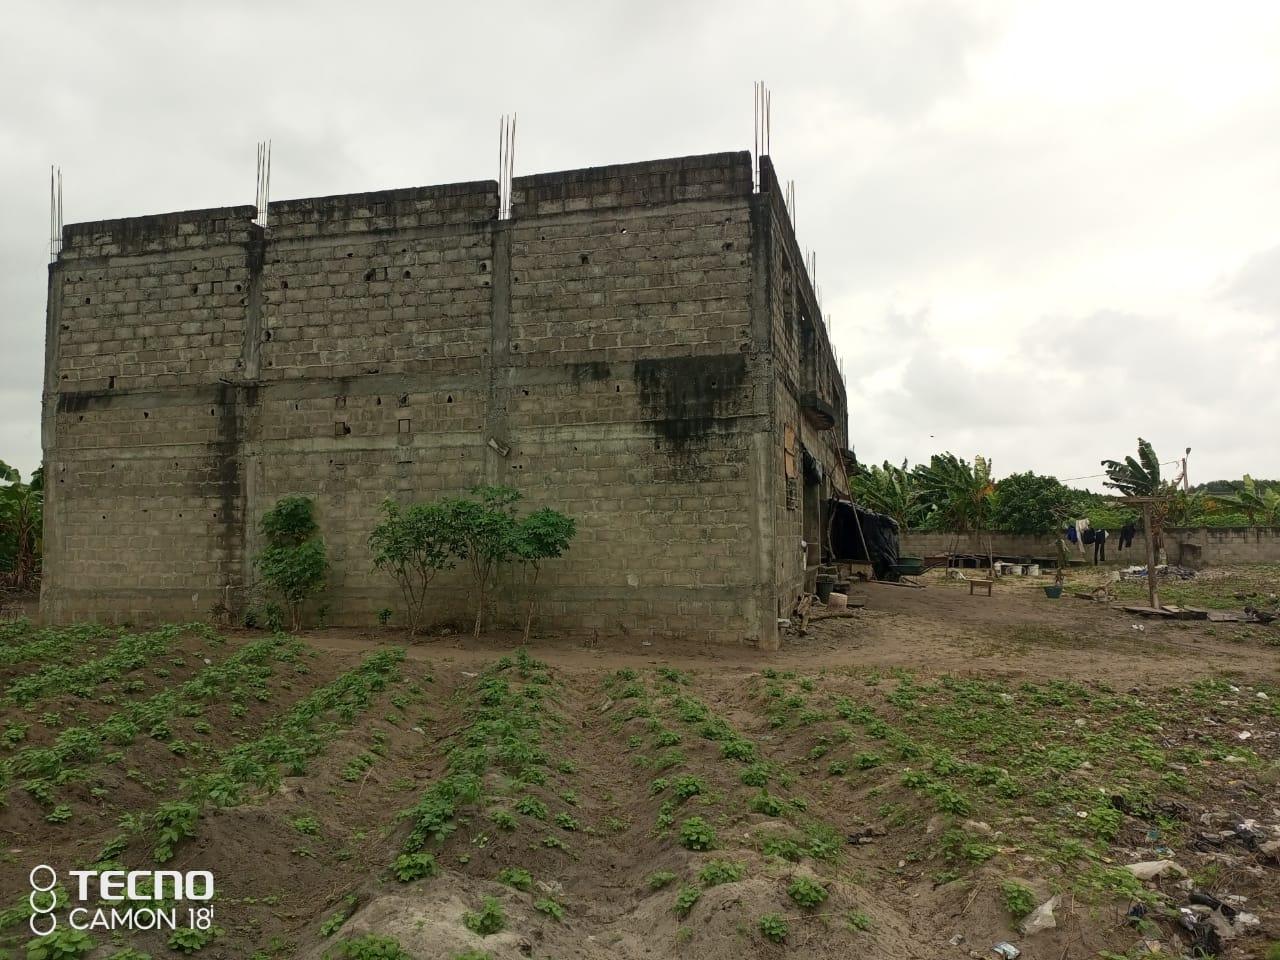 Vente d'un Immeuble à 100.000.000 FCFA  : Bingerville-Bingerville (Gbagbab)